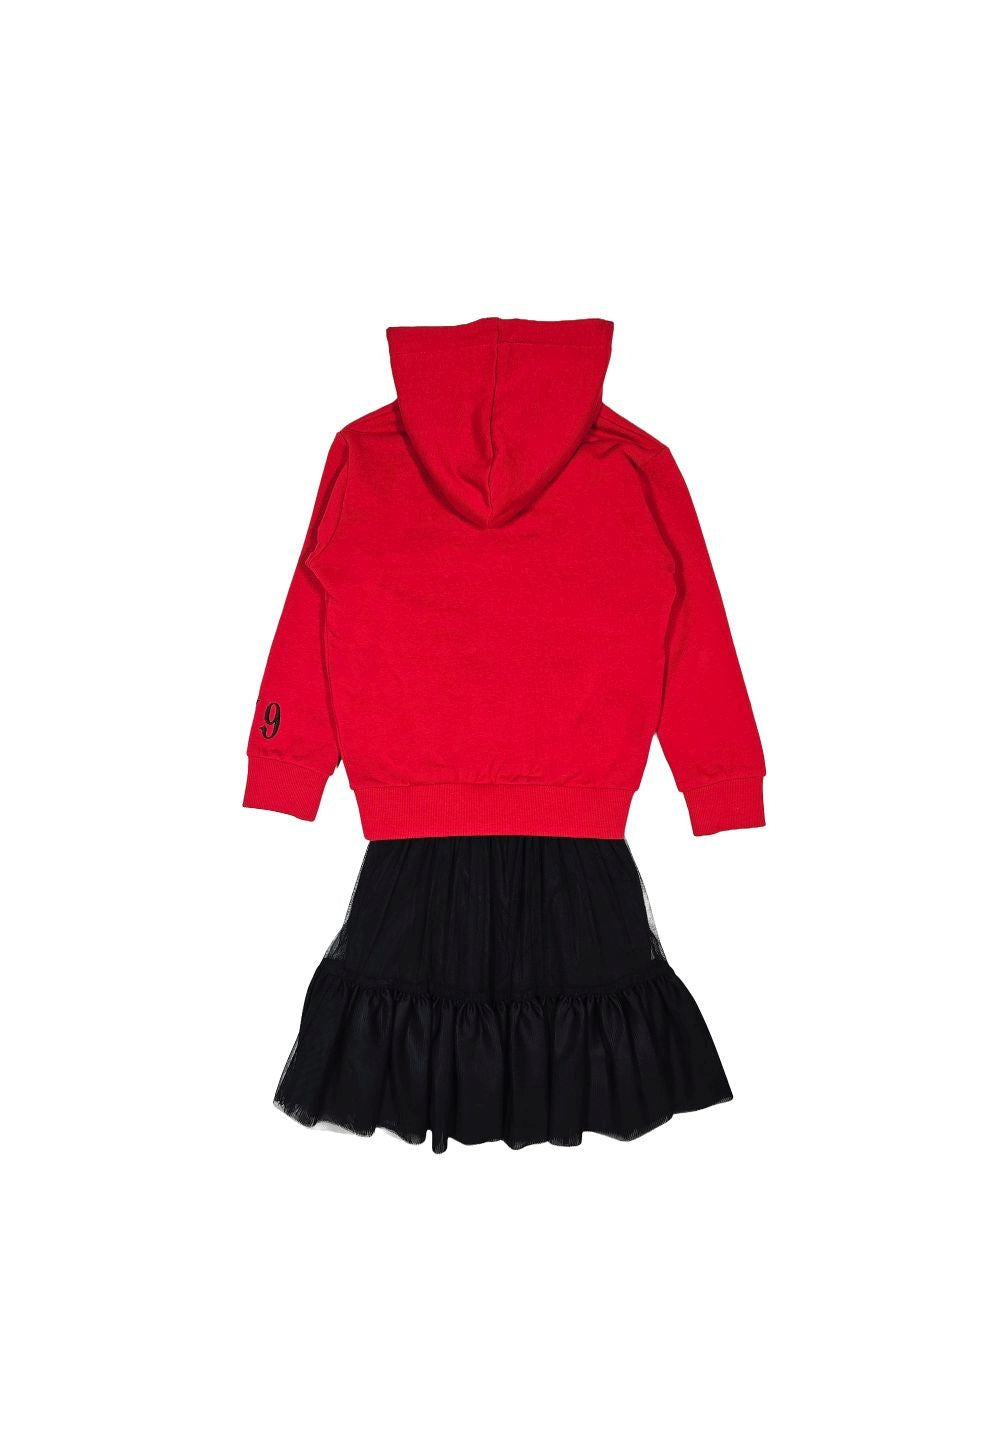 Vestito rosso-nero per bambina - Primamoda kids